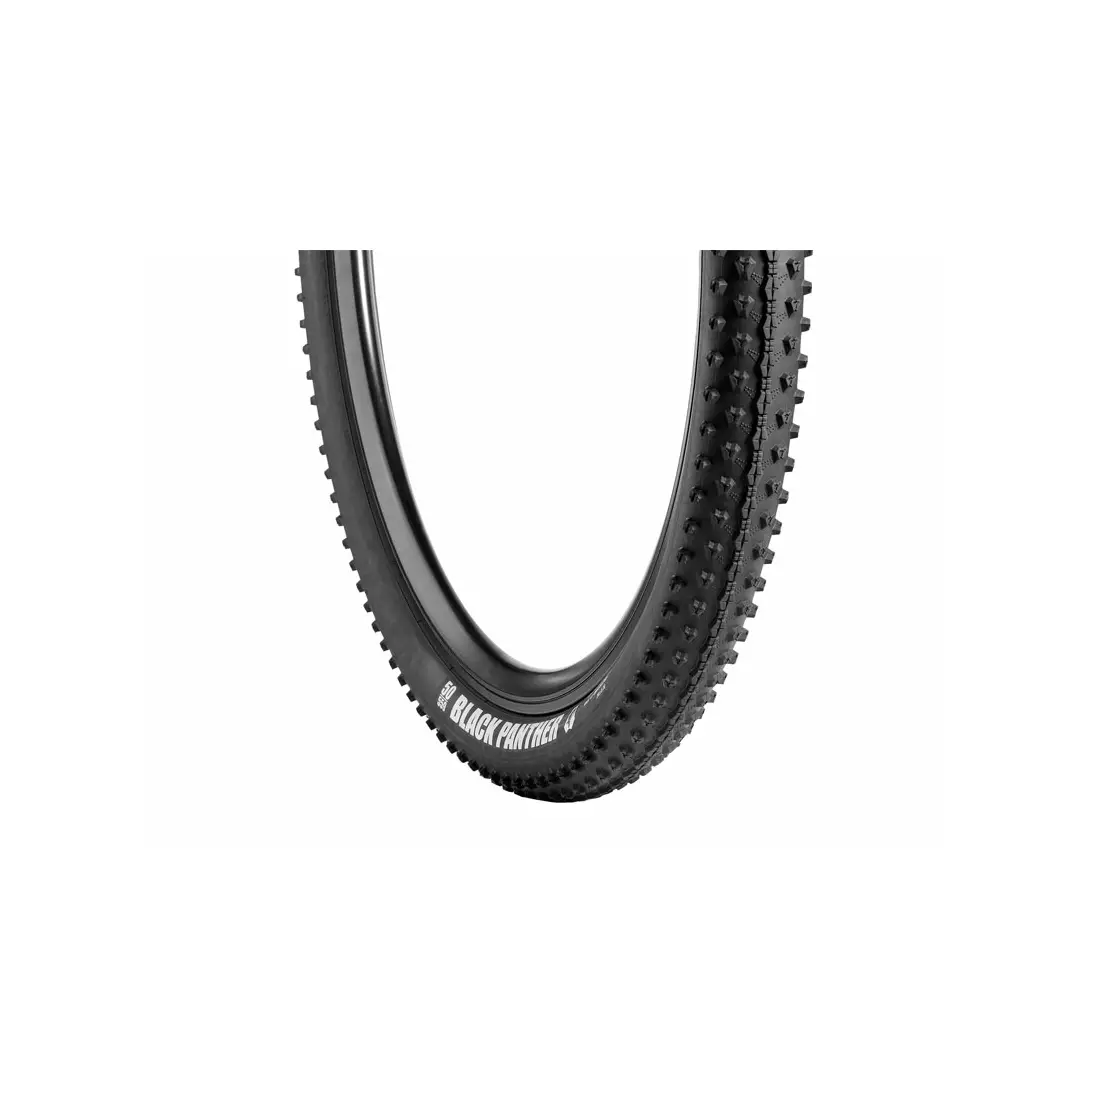 VREDESTEIN BLACK PANTHER XTREME MTB kerékpár gumi 29x2.20 (55-622) összehajtható fekete VRD-29203